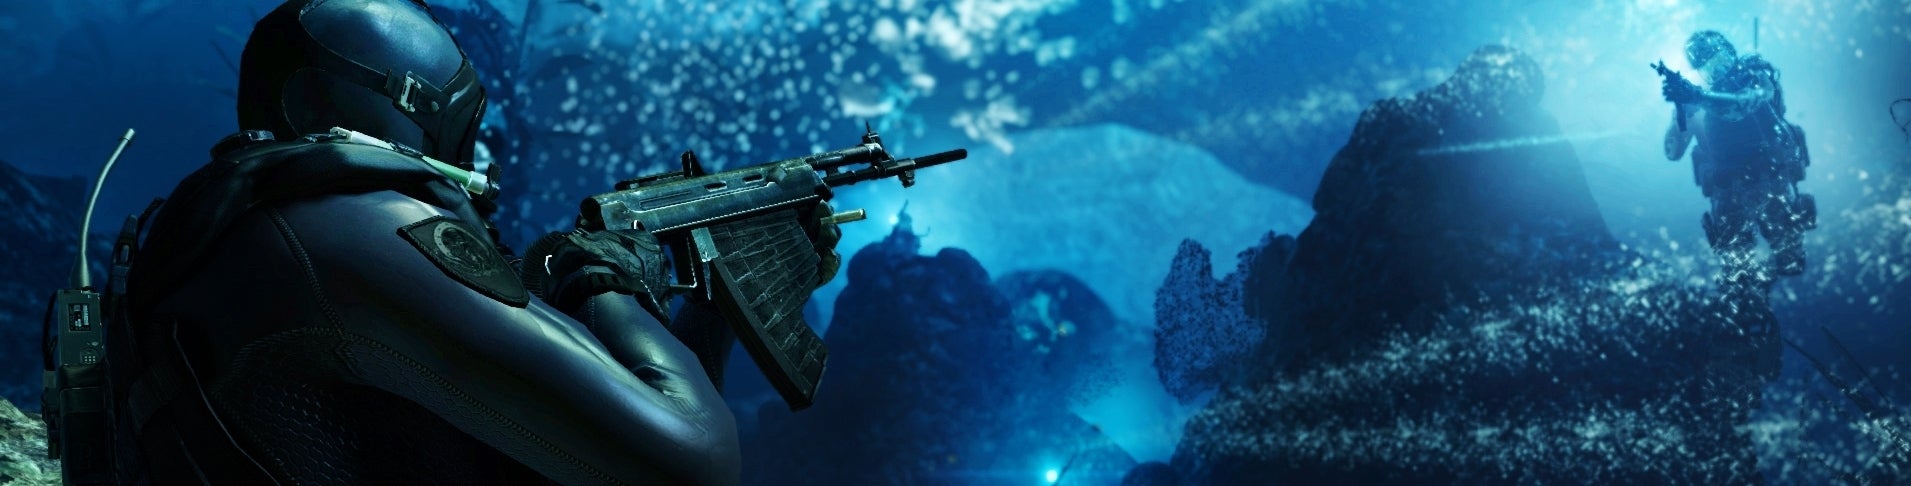 Bilder zu Call of Duty: Ghosts Xbox One - Test